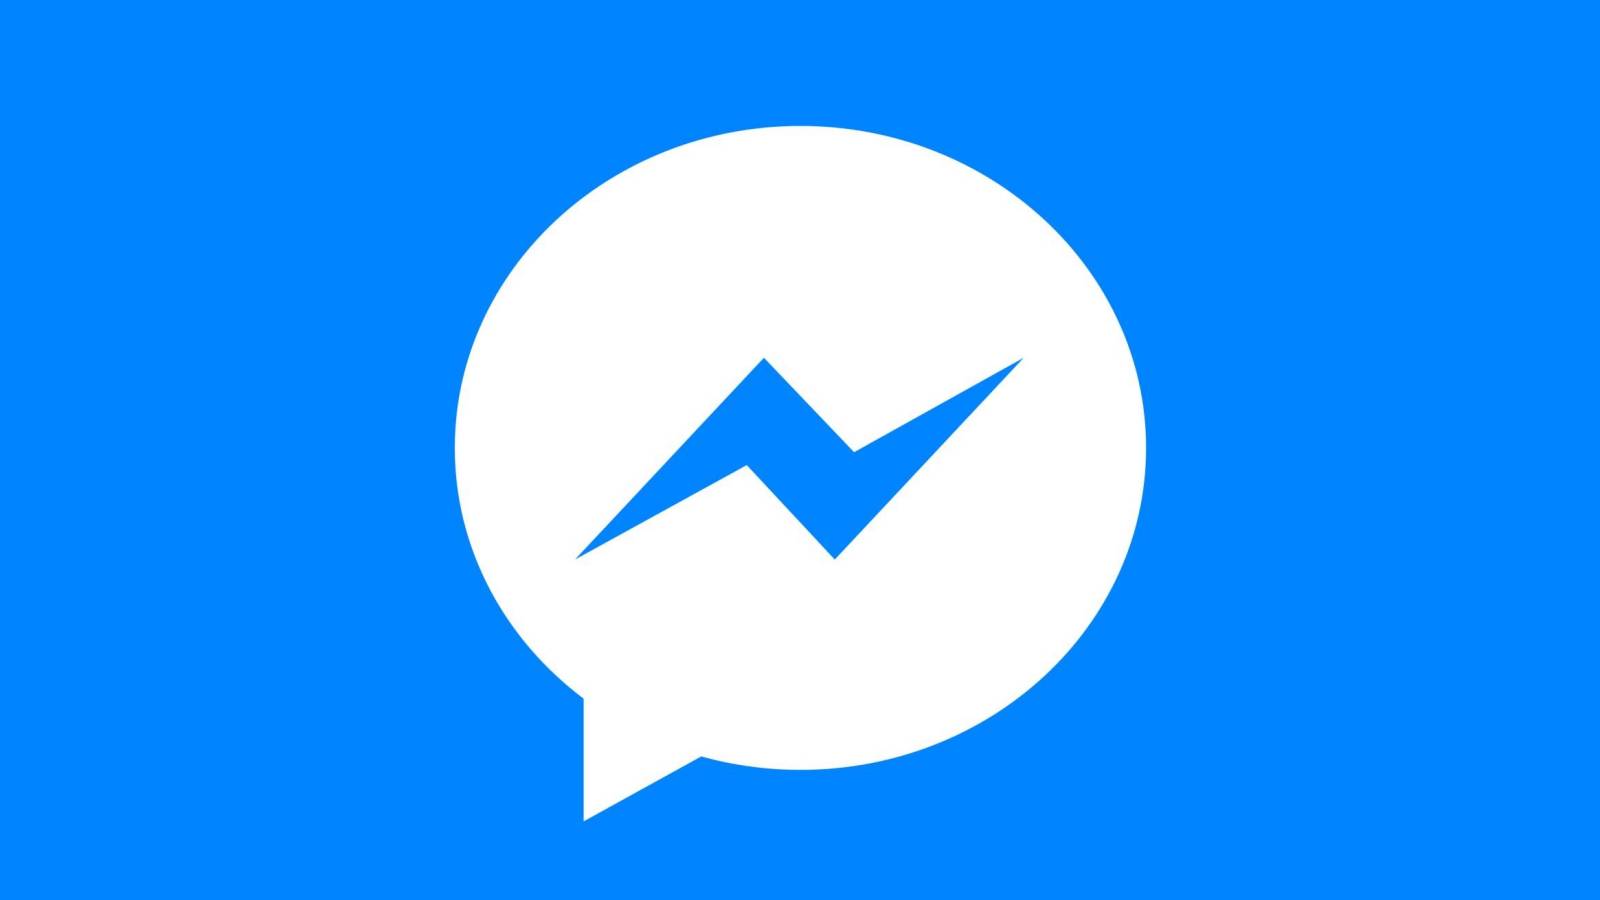 Facebook Messenger met à jour la liste des modifications